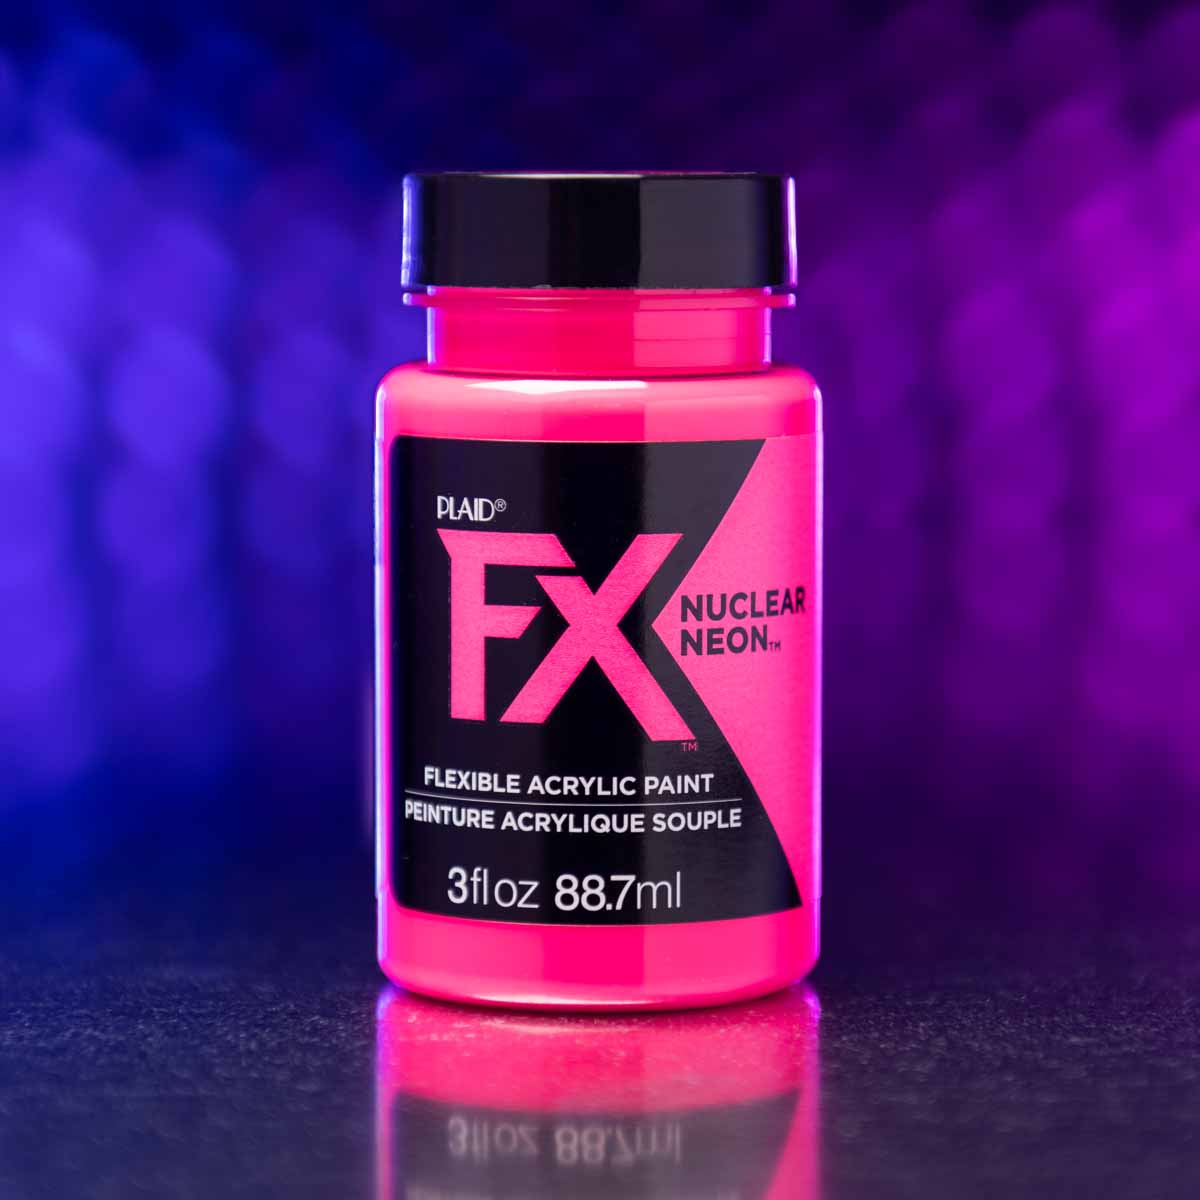 PlaidFX Nuclear Neon Flexible Acrylic Paint Set, 5 pc. - FXNEON5PC